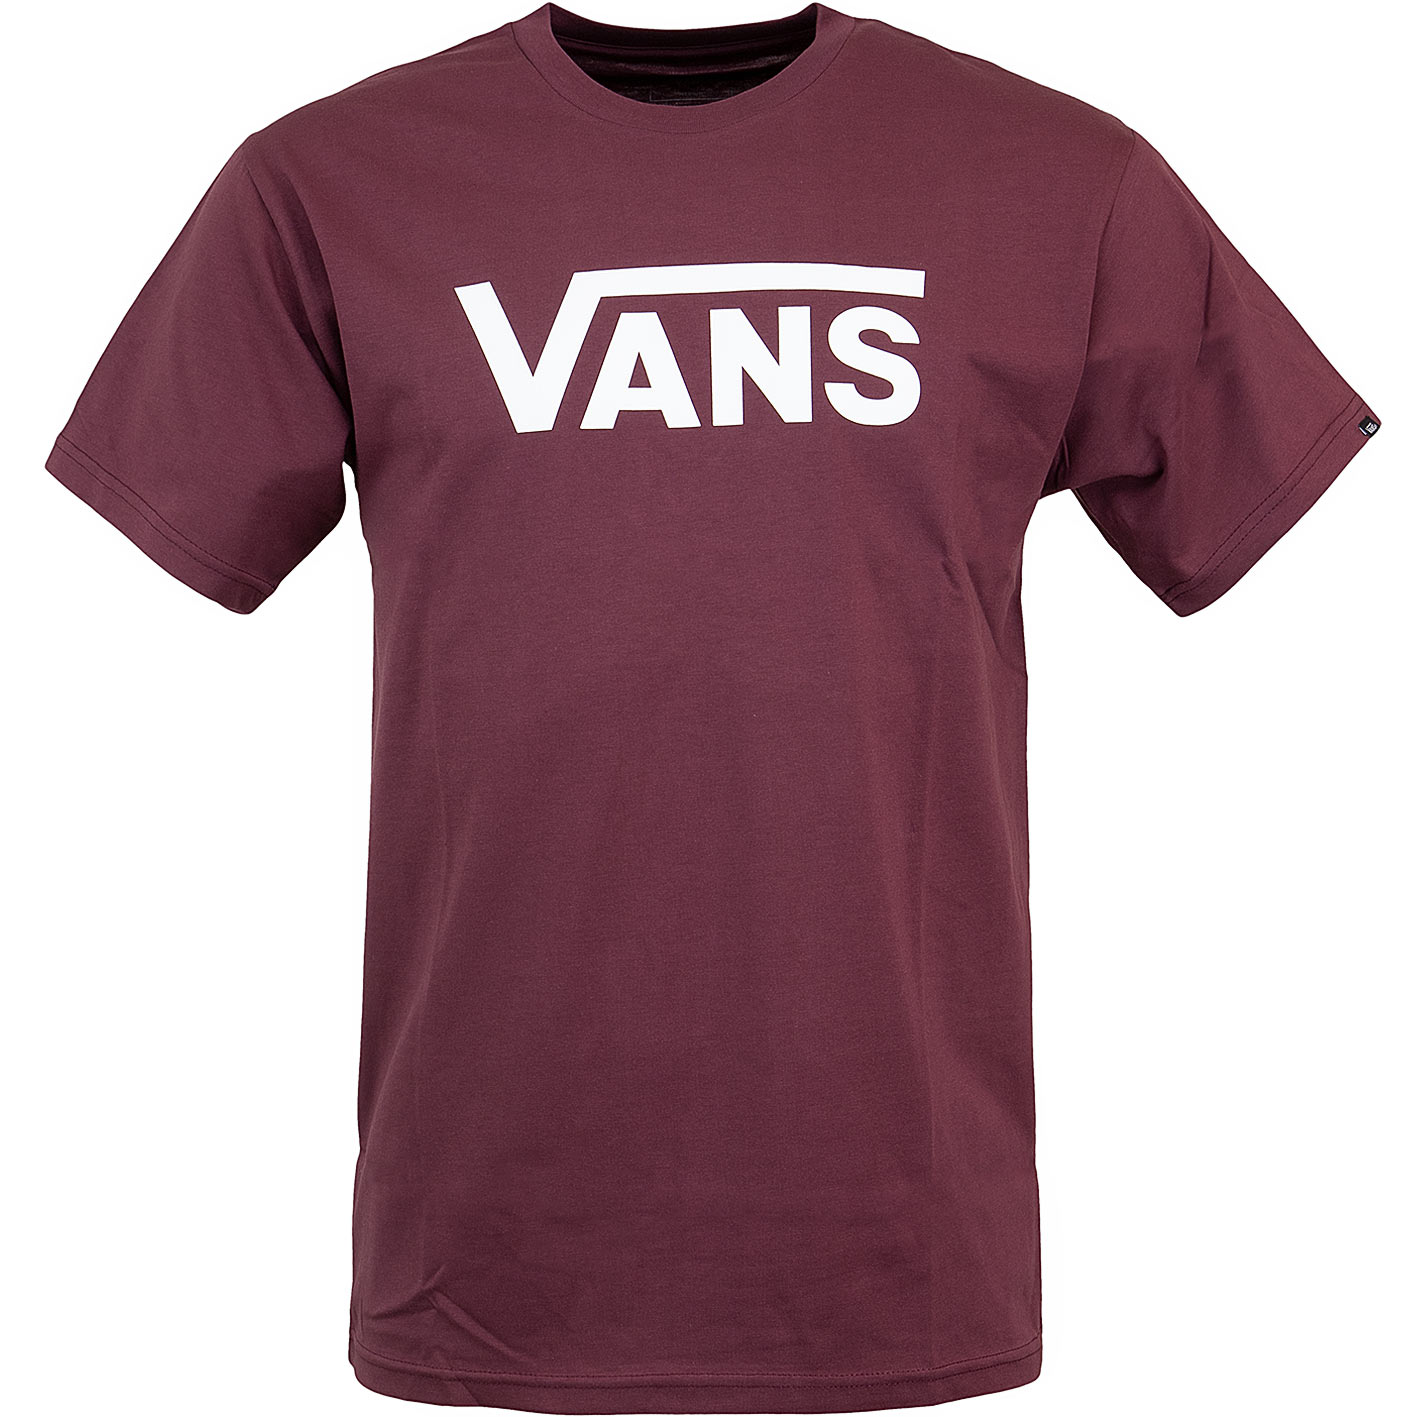 ☆ Vans T-Shirt Classic weinrot - hier bestellen!